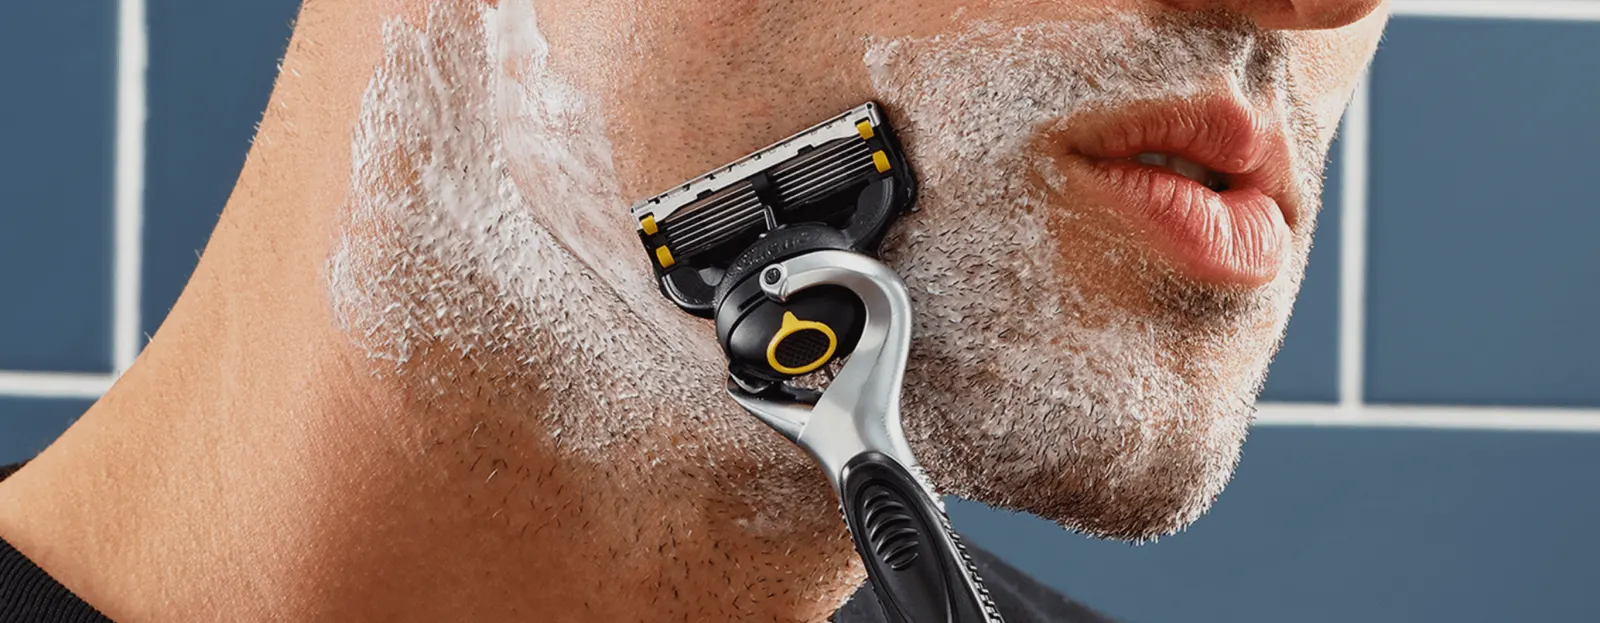 Cómo evitar las erupciones después del afeitado: todo sobre la lubricación